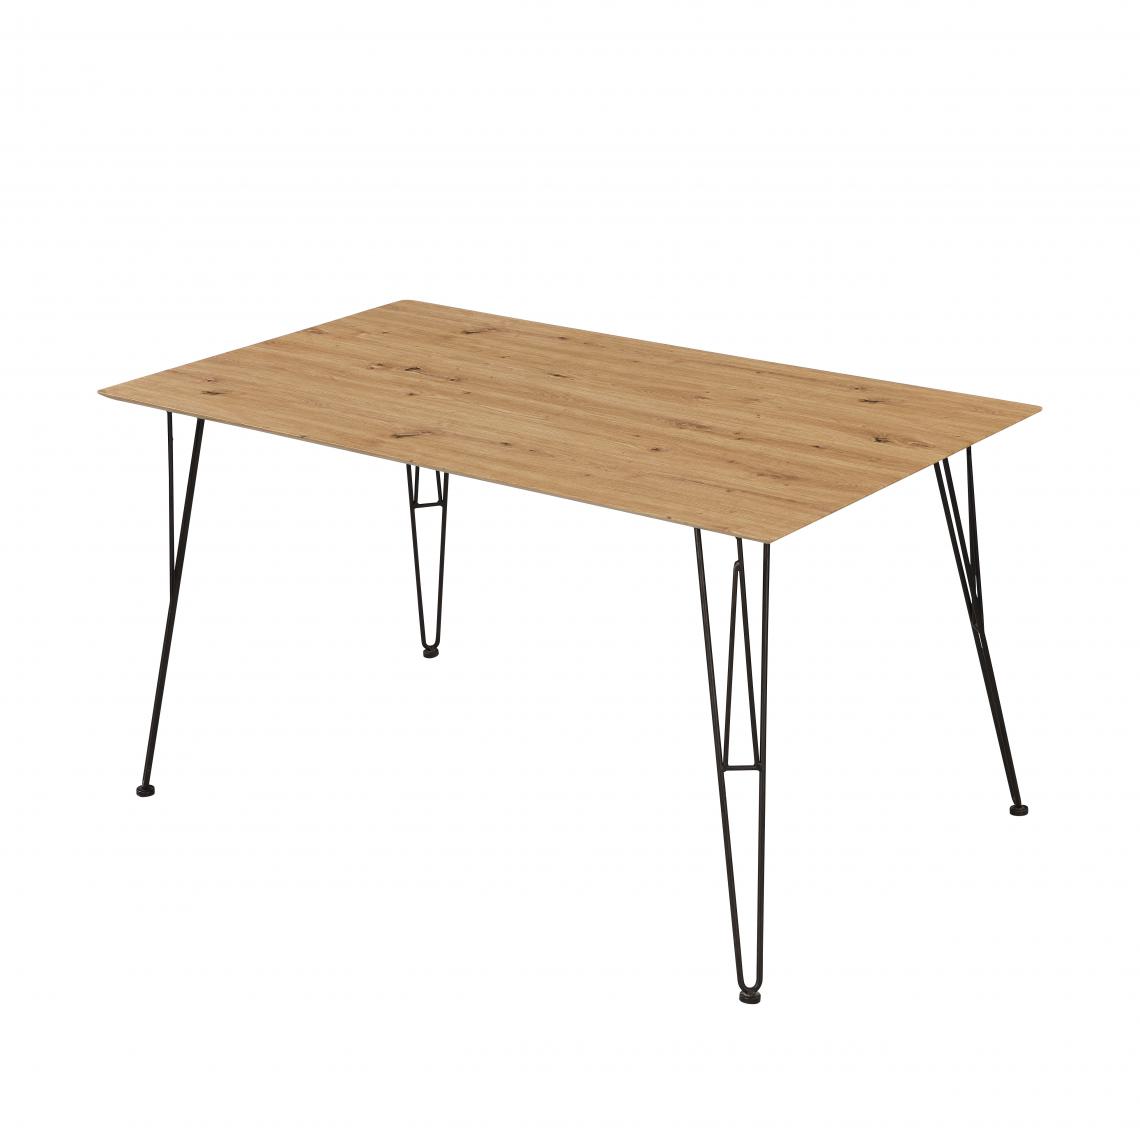 Alter - Table moderne, avec structure en métal et plateau en mdf laminé chêne, 140x80x75 cm - Tables à manger